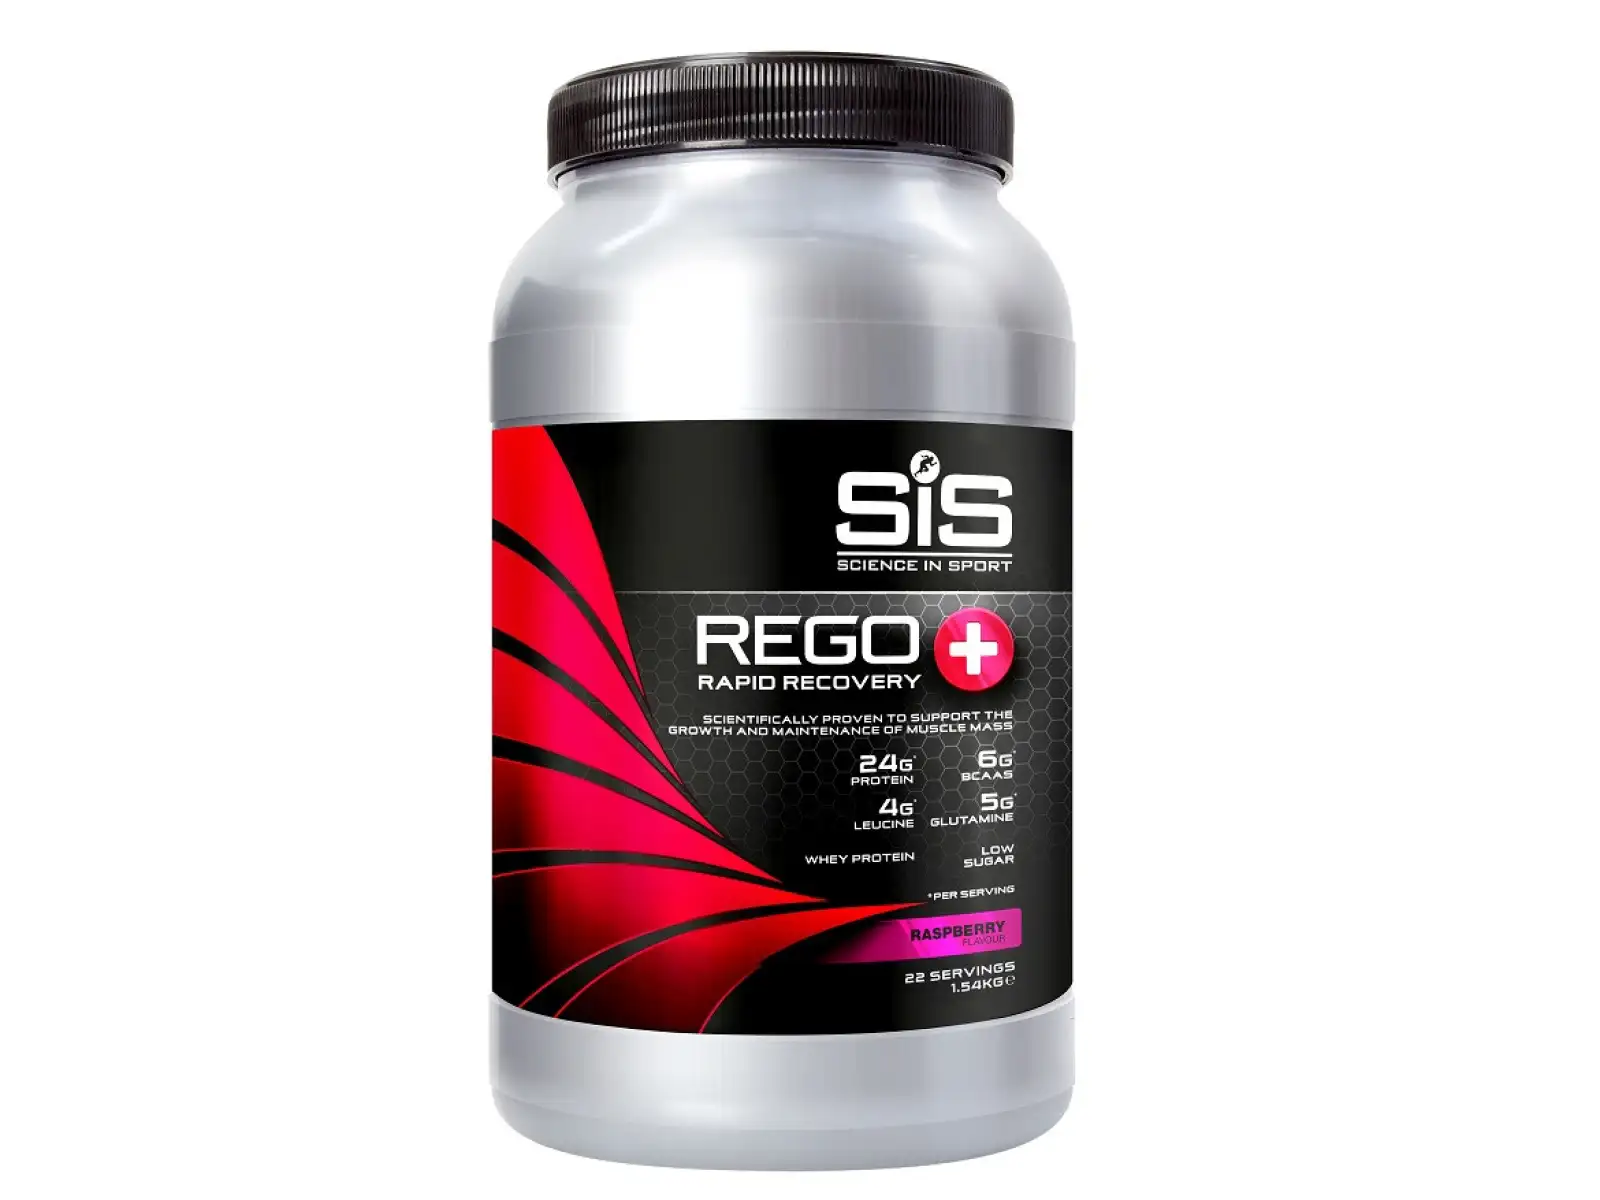 SiS Rego Rapid Recovery regenerační nápoj jahoda 1 kg